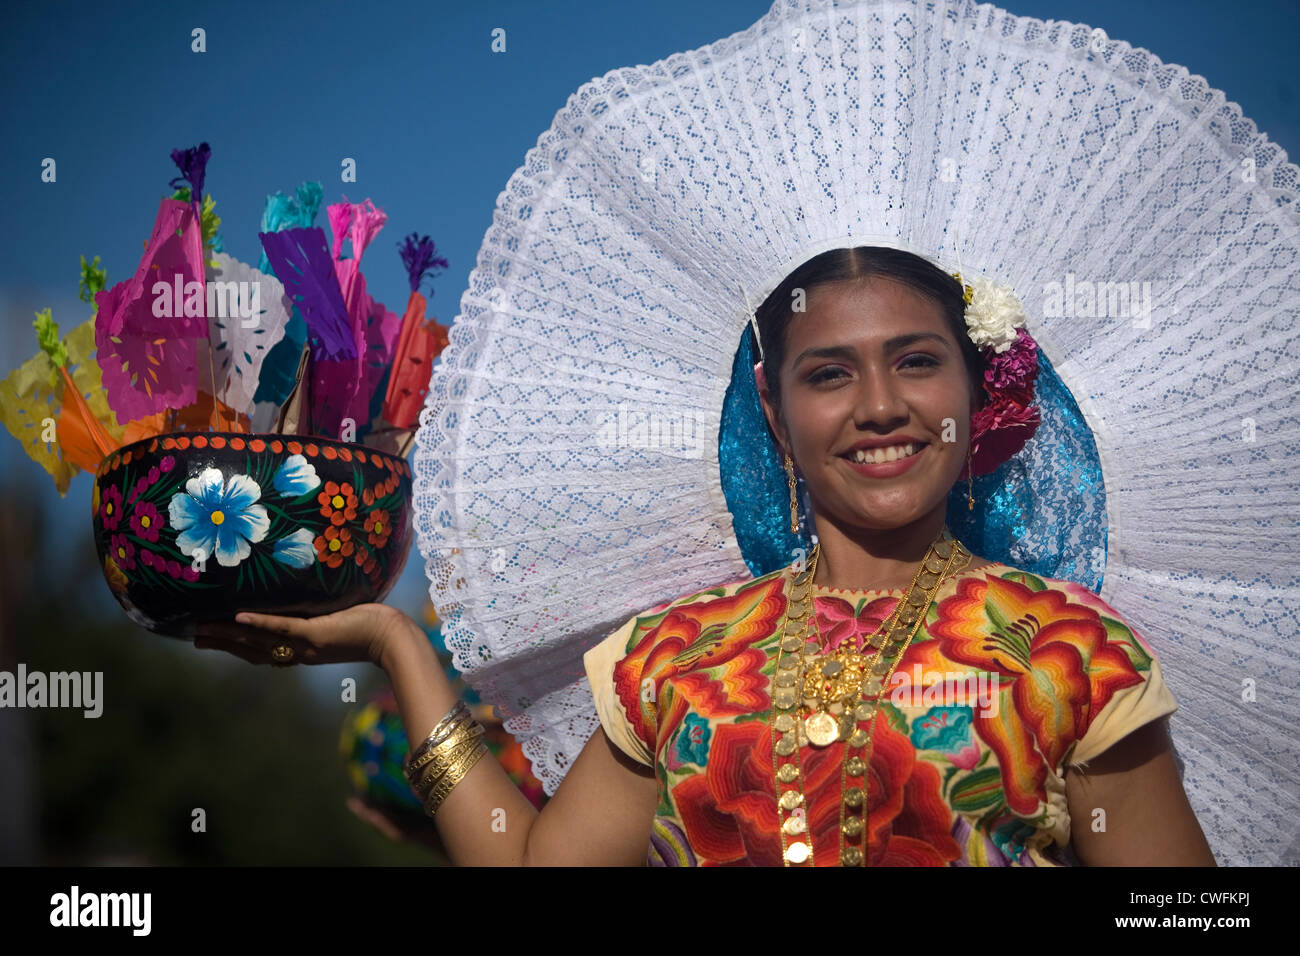 A Tehuana dancer smiles during the Guelaguetza parade in Oaxaca, Mexico. Stock Photo